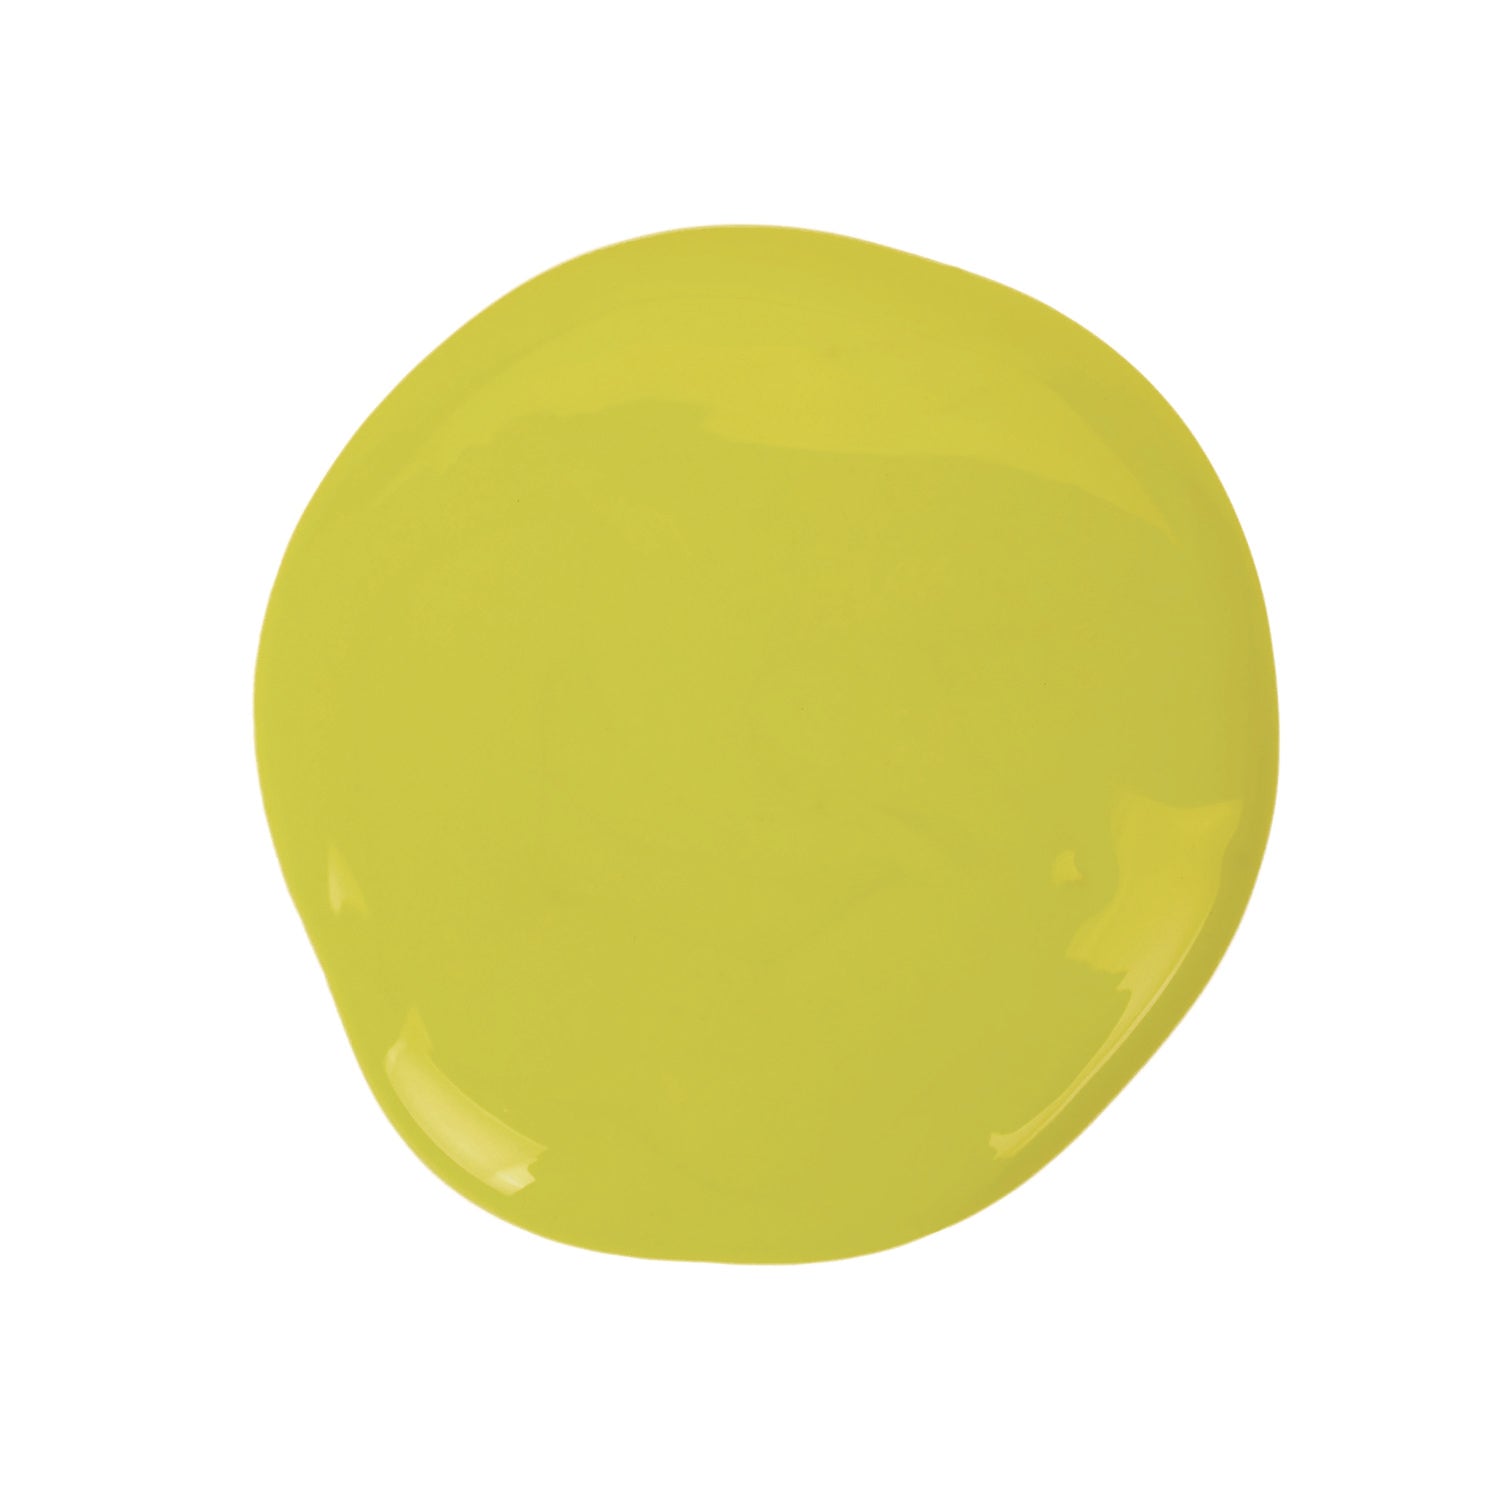 Washable Paint, Yellow, 16 oz Bottle - 